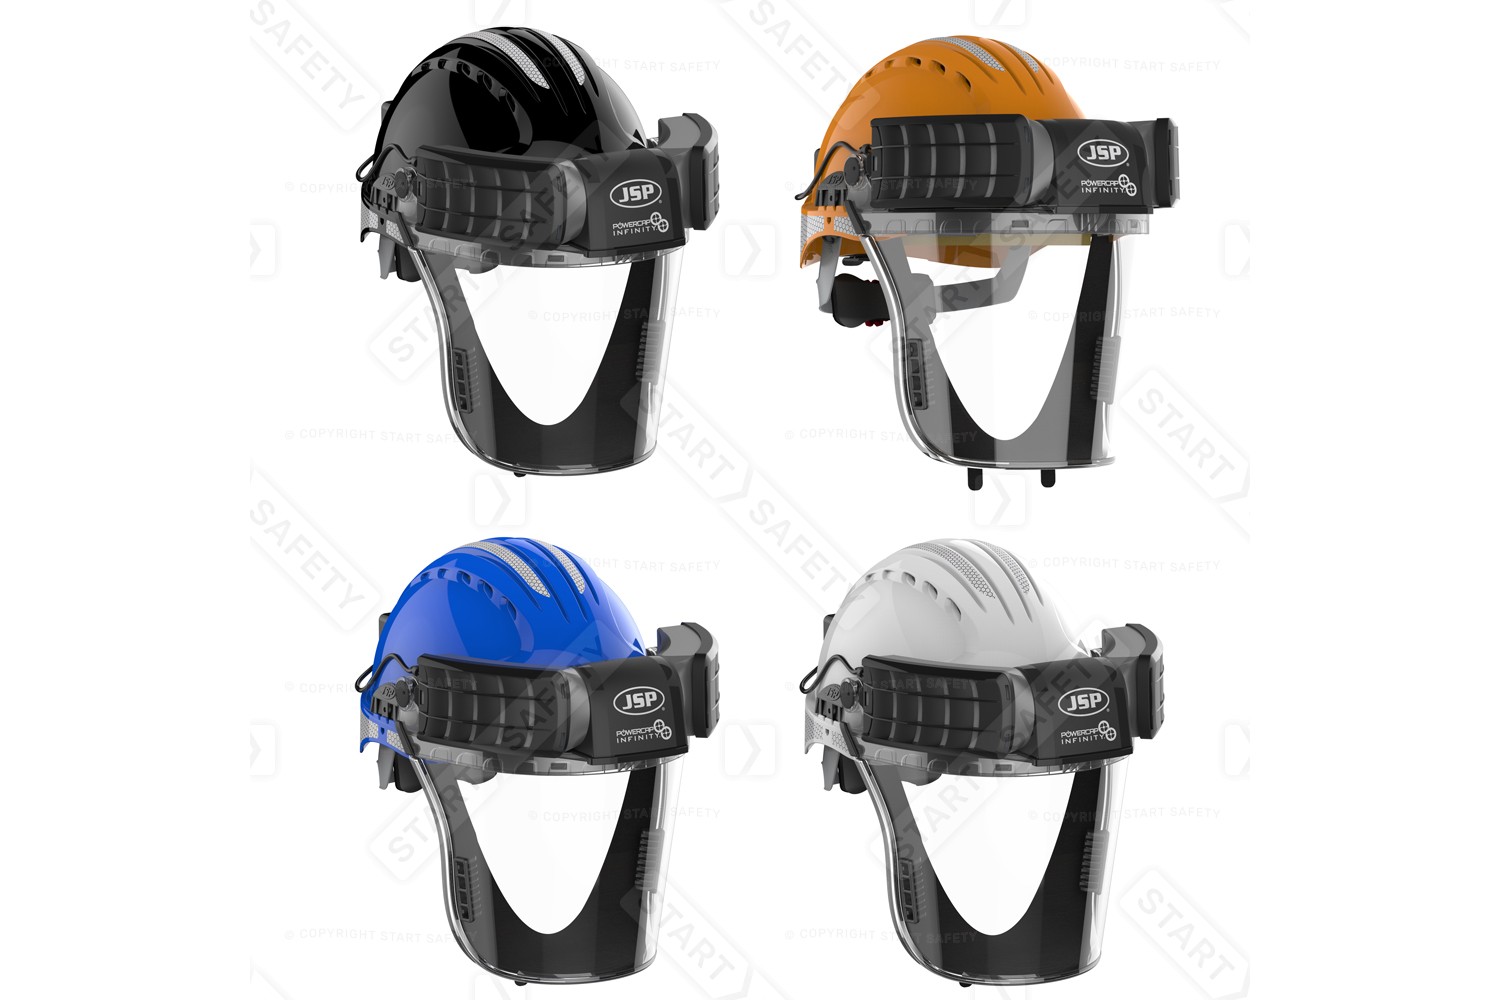 Multiple Colour Options Of The Powercap Active: Blue, Black, Orange & White